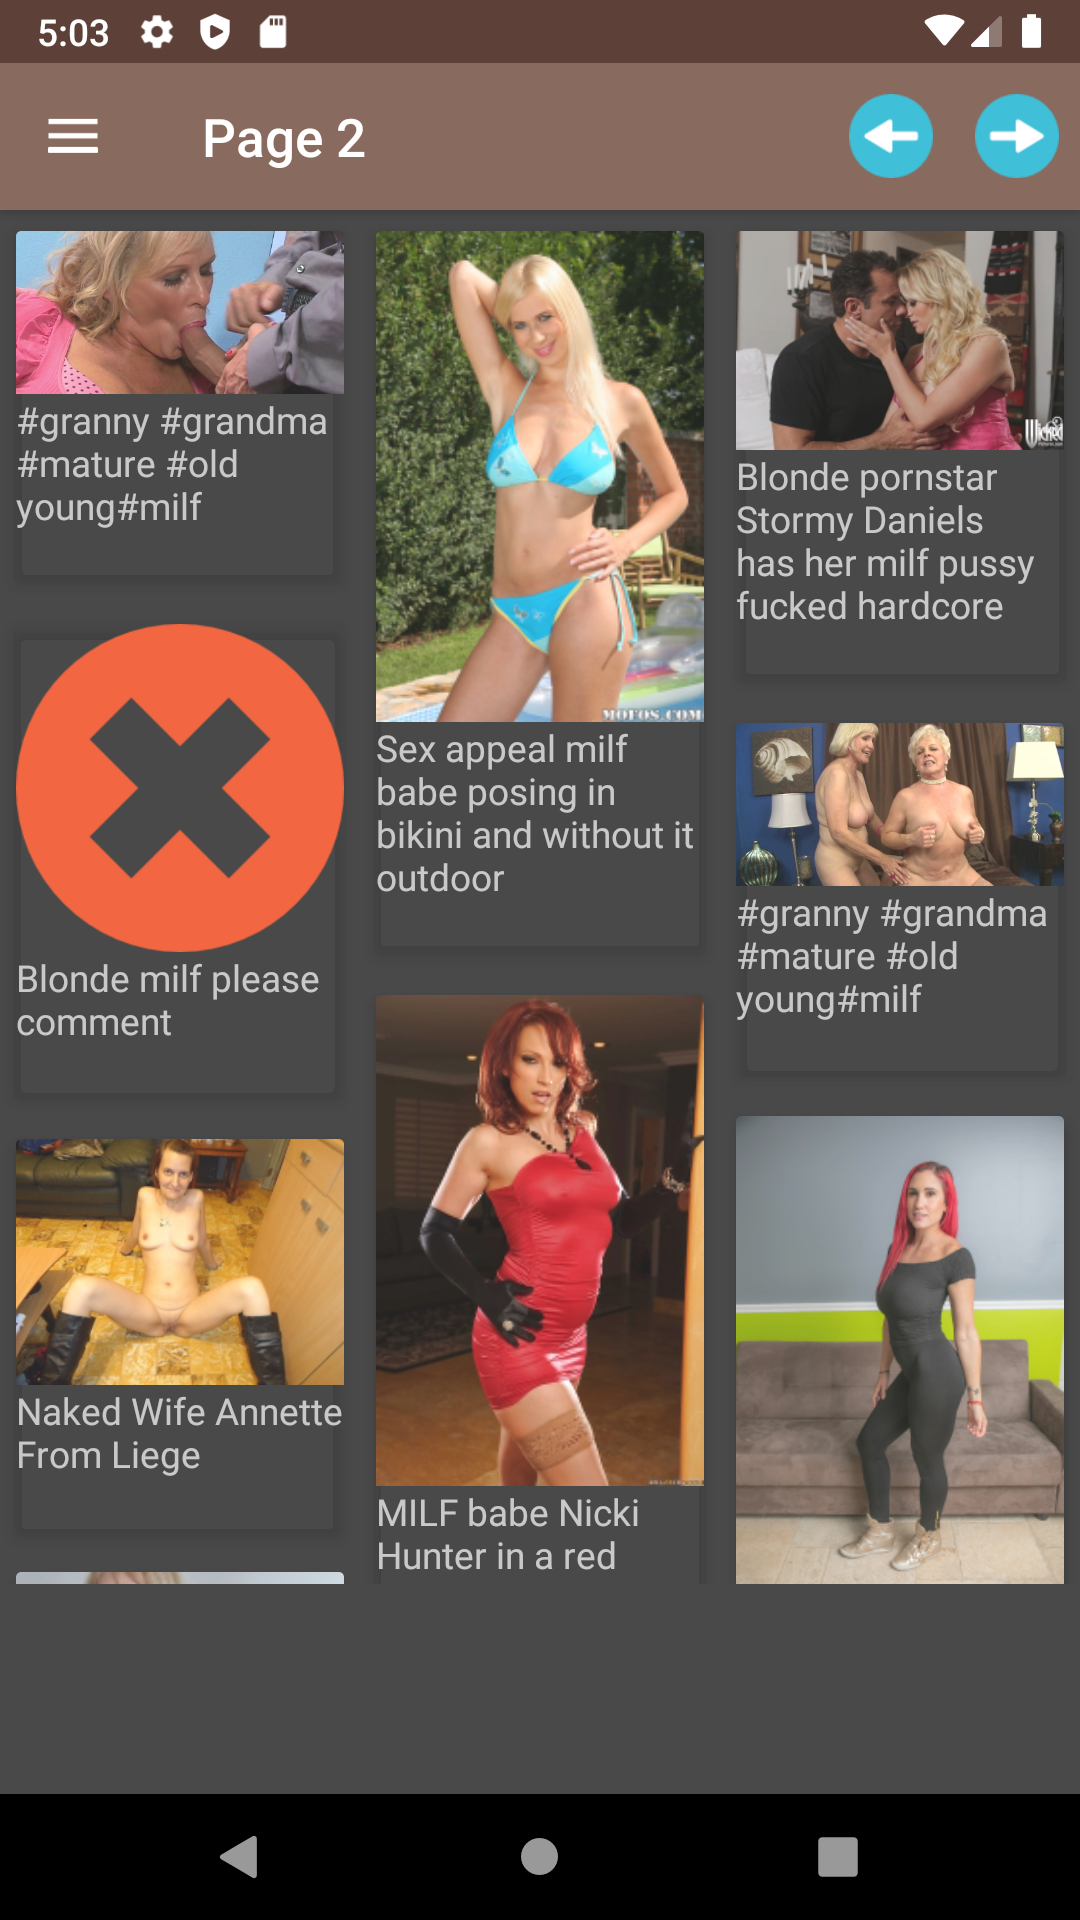 Milf Sex backgrounds,apk,harem,sexy,comix,titty,sex,pics,photo,hetai,porn,images,editor,tuesday,pornstars,hintai,app,galleries,hot,futanari,hentai,erotic